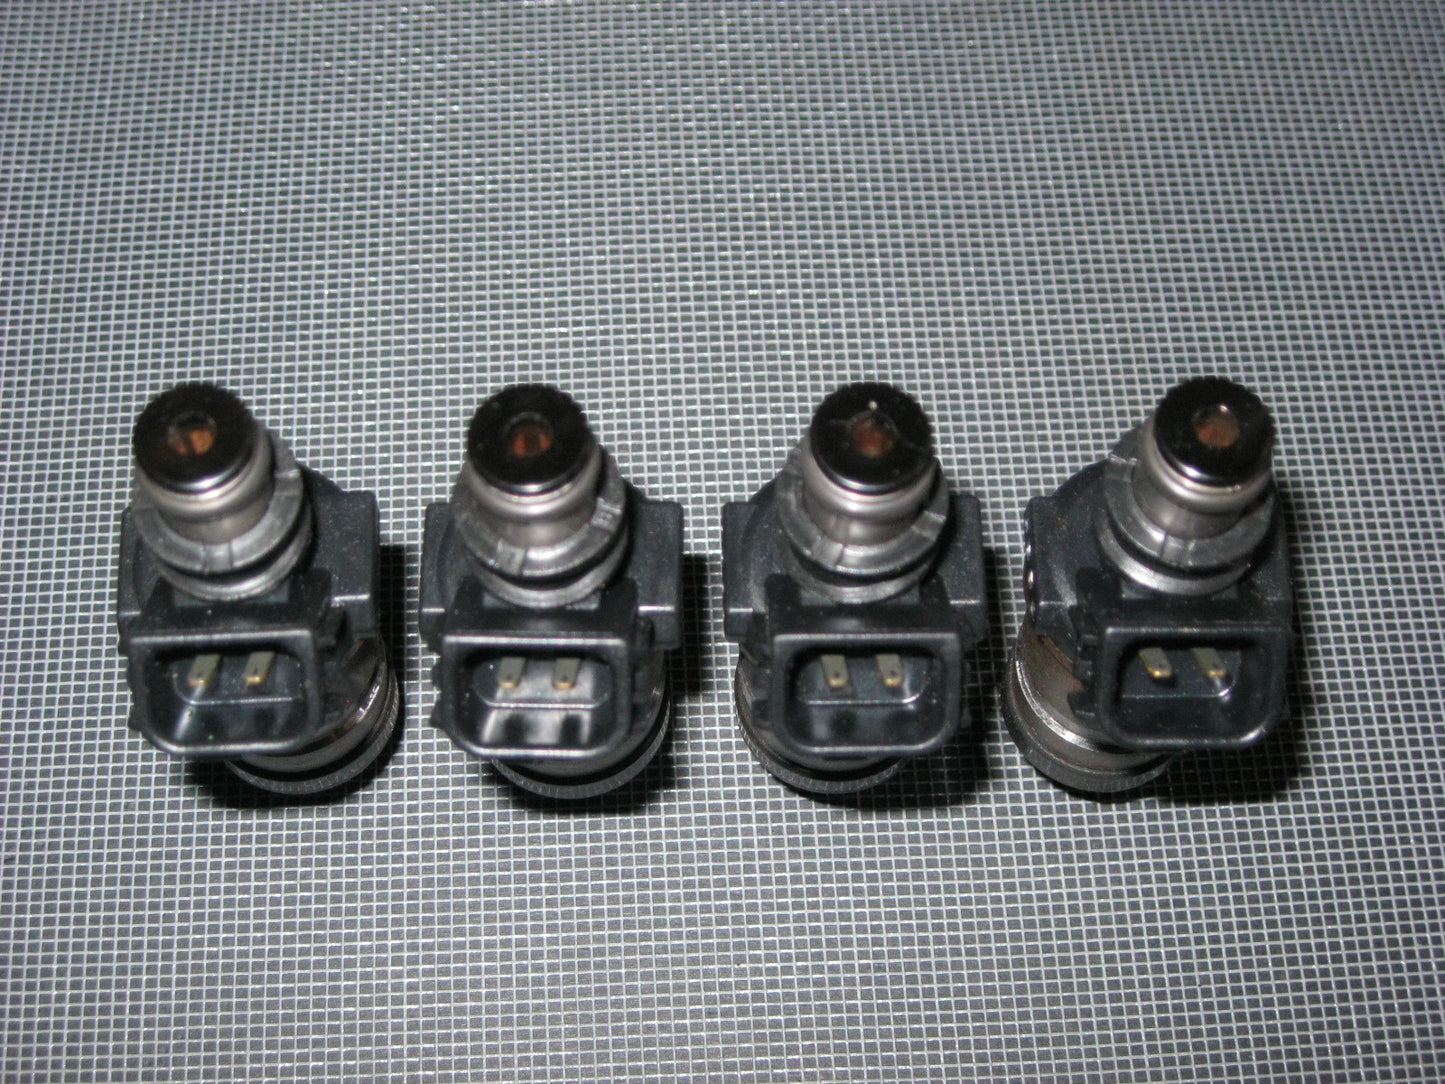 96-00 Honda Civic D14A3 DPFi SFi OEM Fuel Injector Set